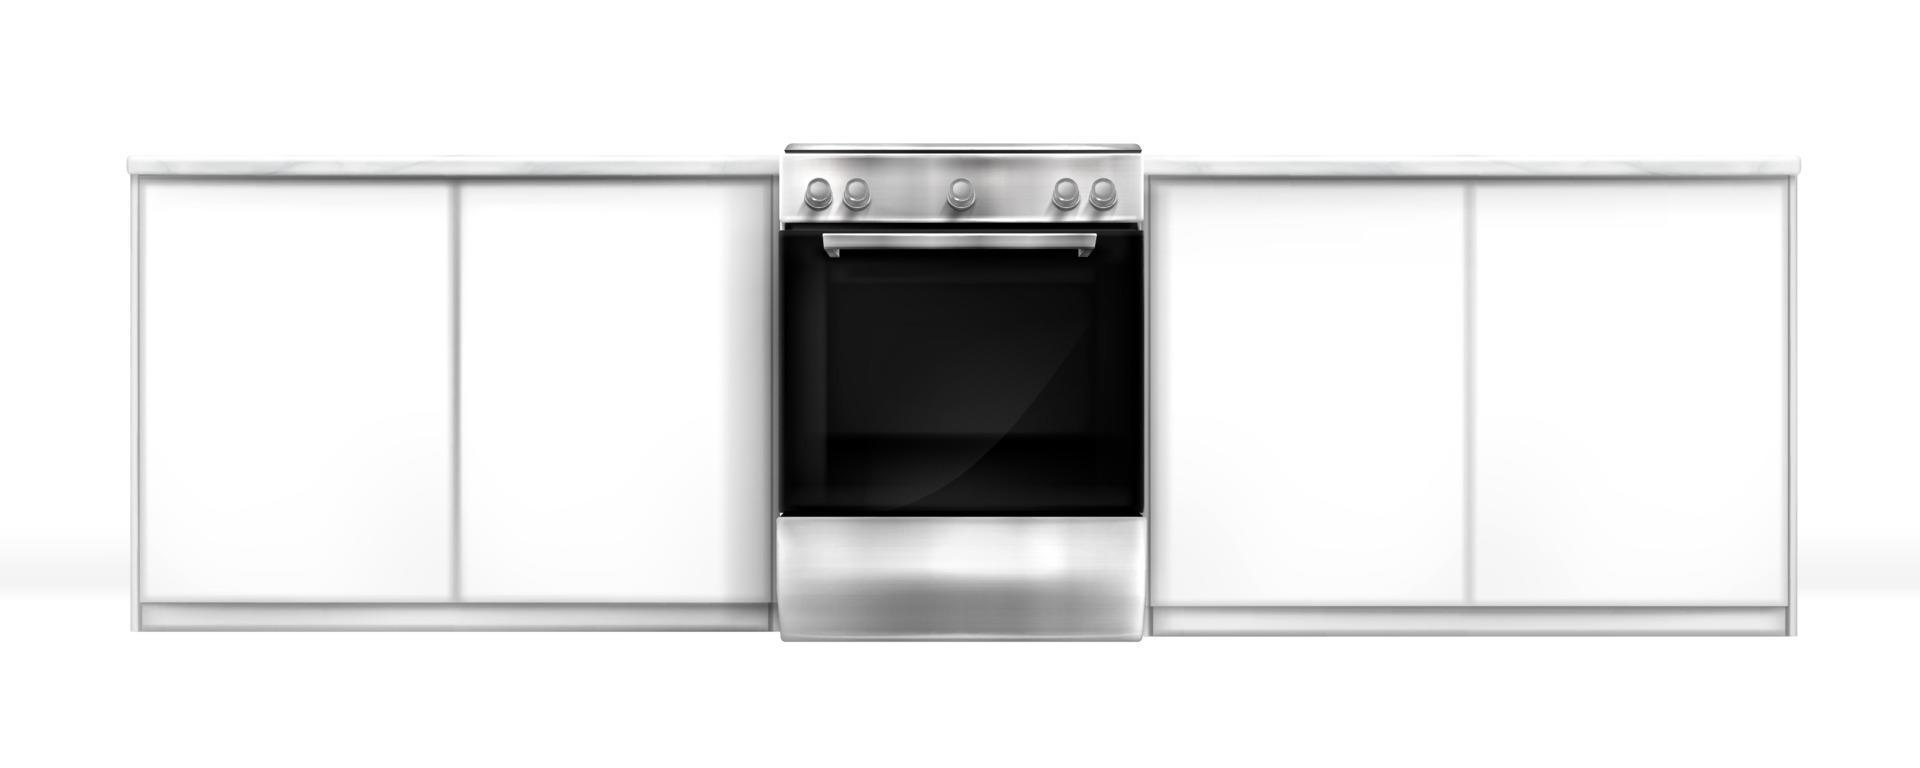 oven in keuken bureau, elektrisch ingebouwd toestel vector